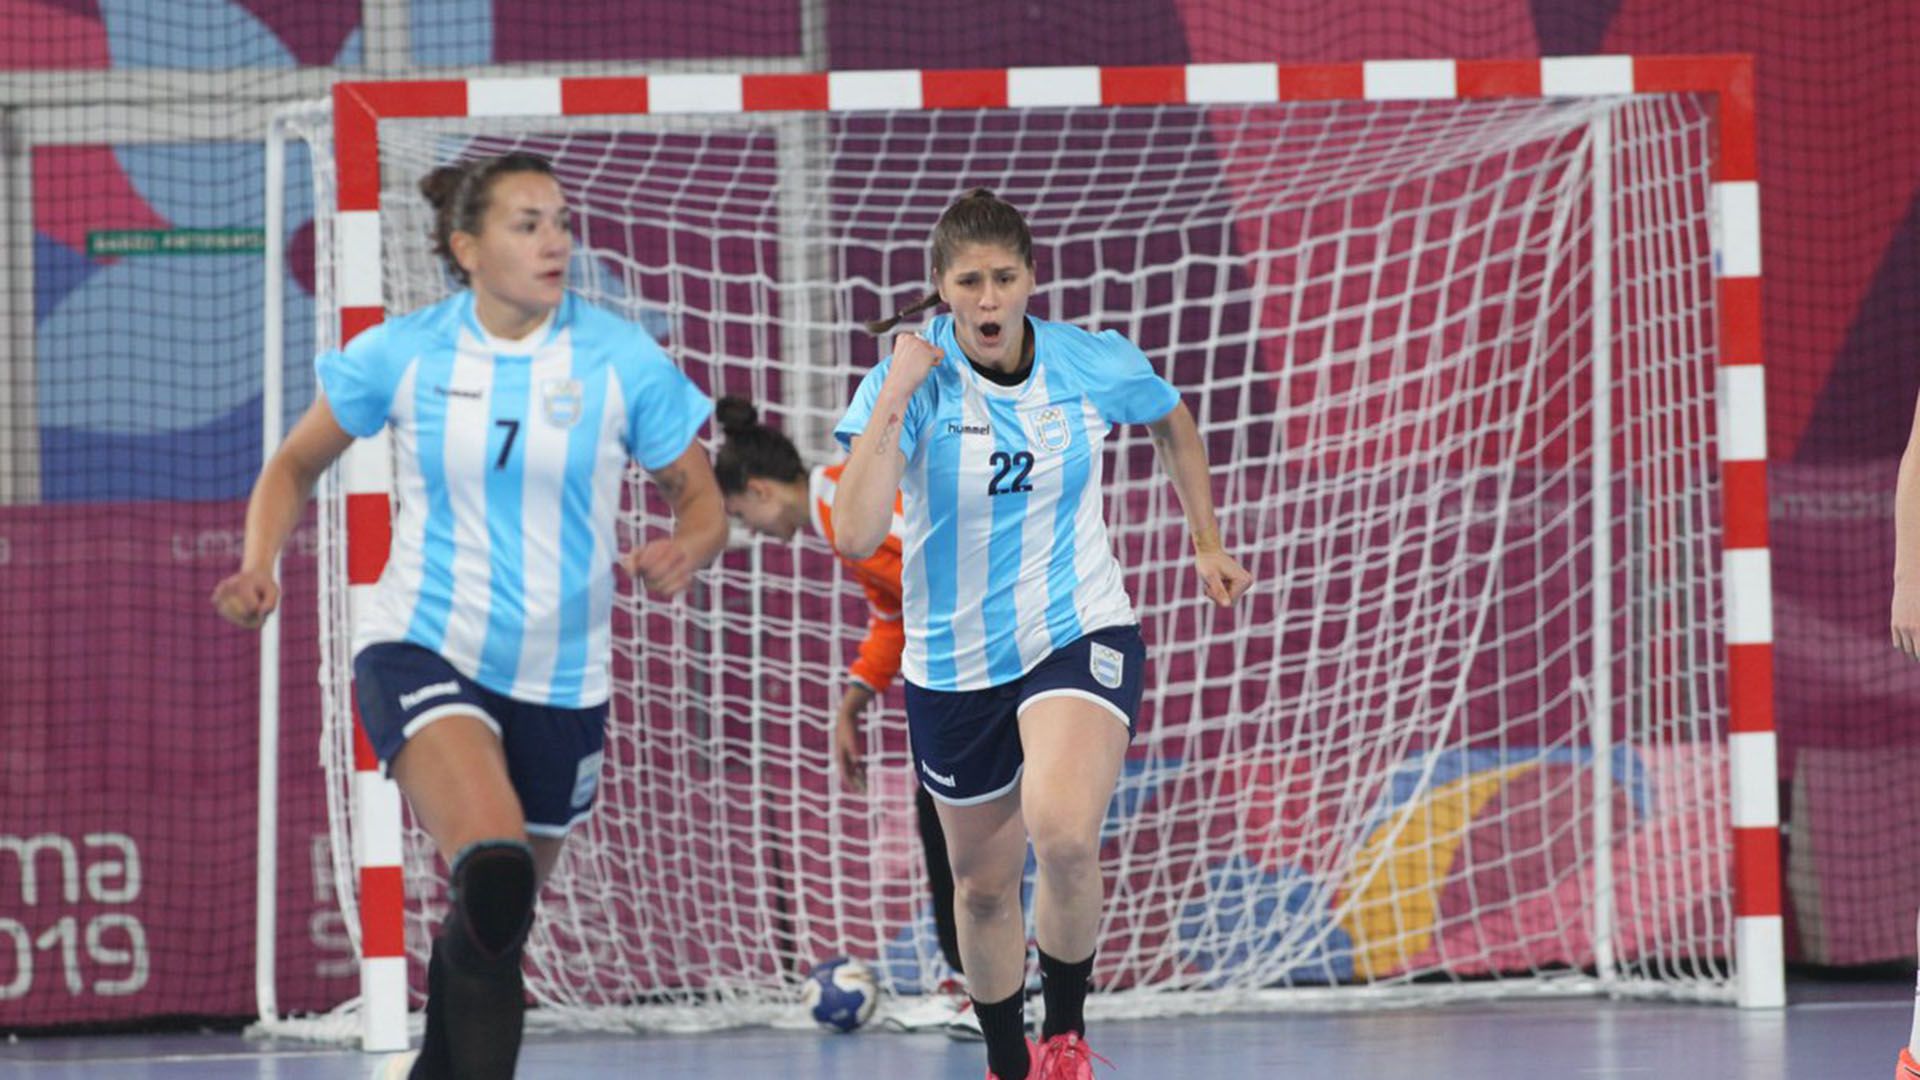 La selección femenina hizo historia superando la barrera de los 50 goles (Foto: @PrensaCOA)